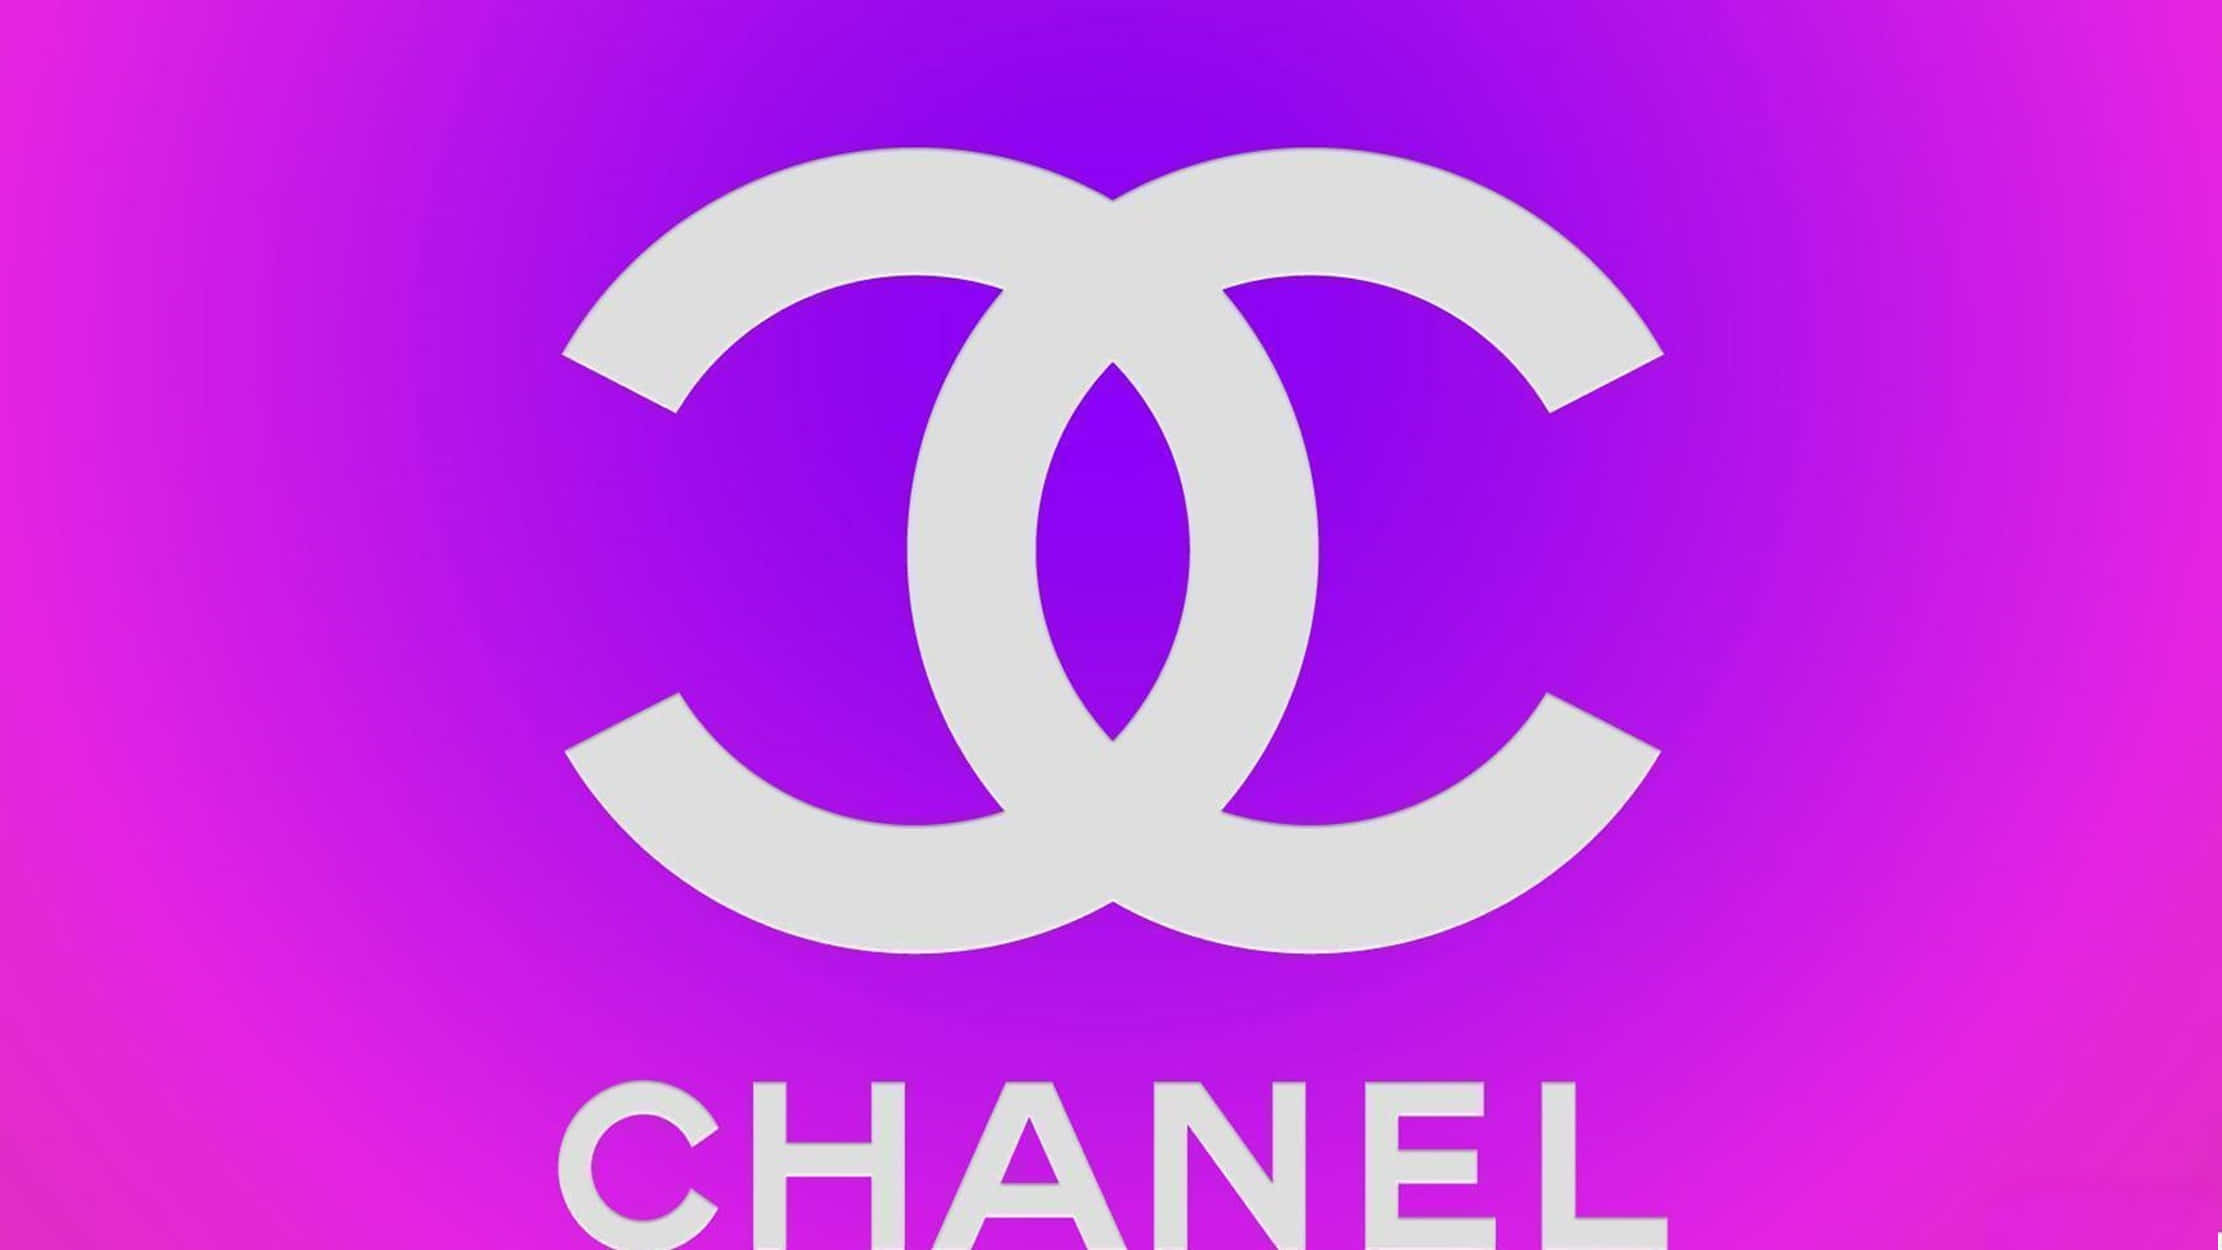 Chanel Girly Logo Wallpaper